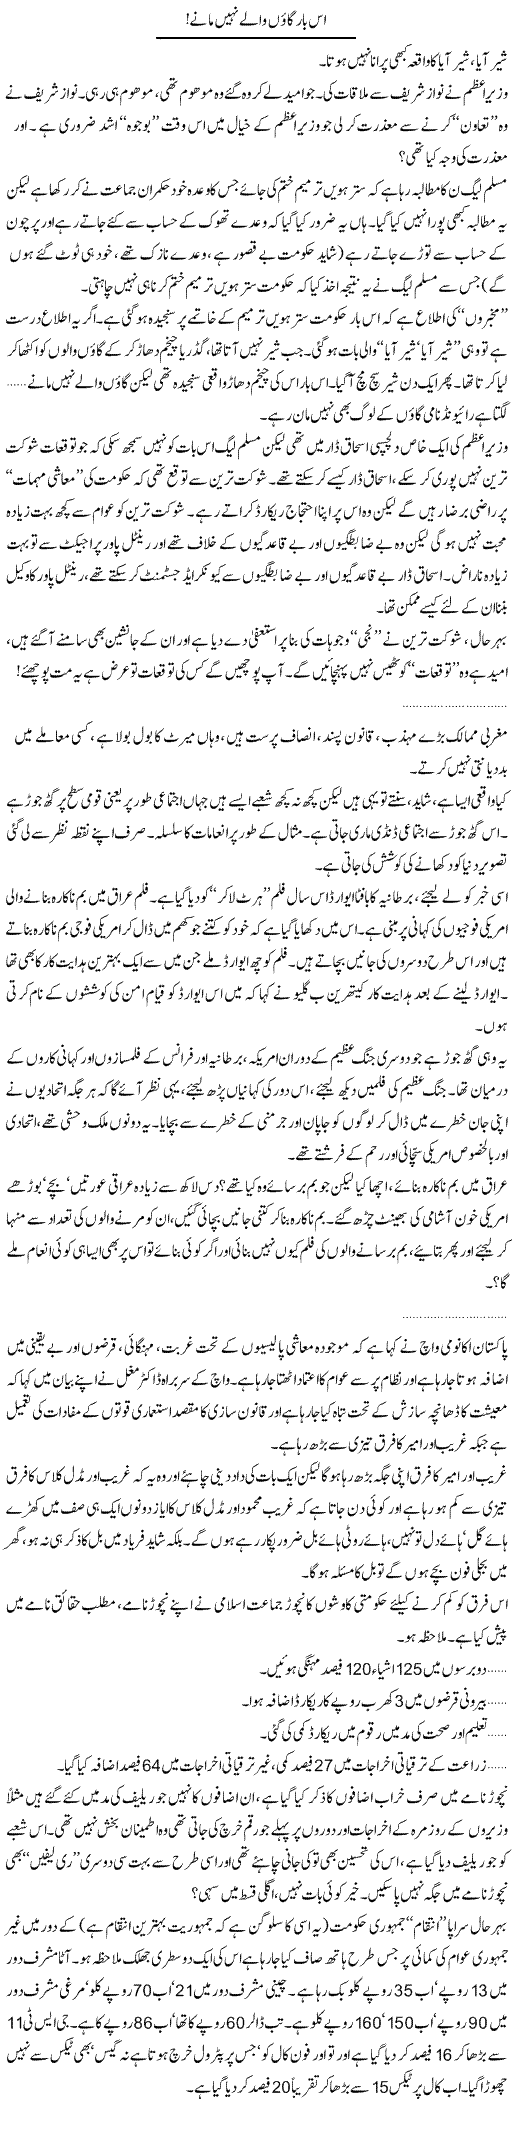 Gaon valy nahi mane Express Column Abdullah Tariq 25 Feb 2010